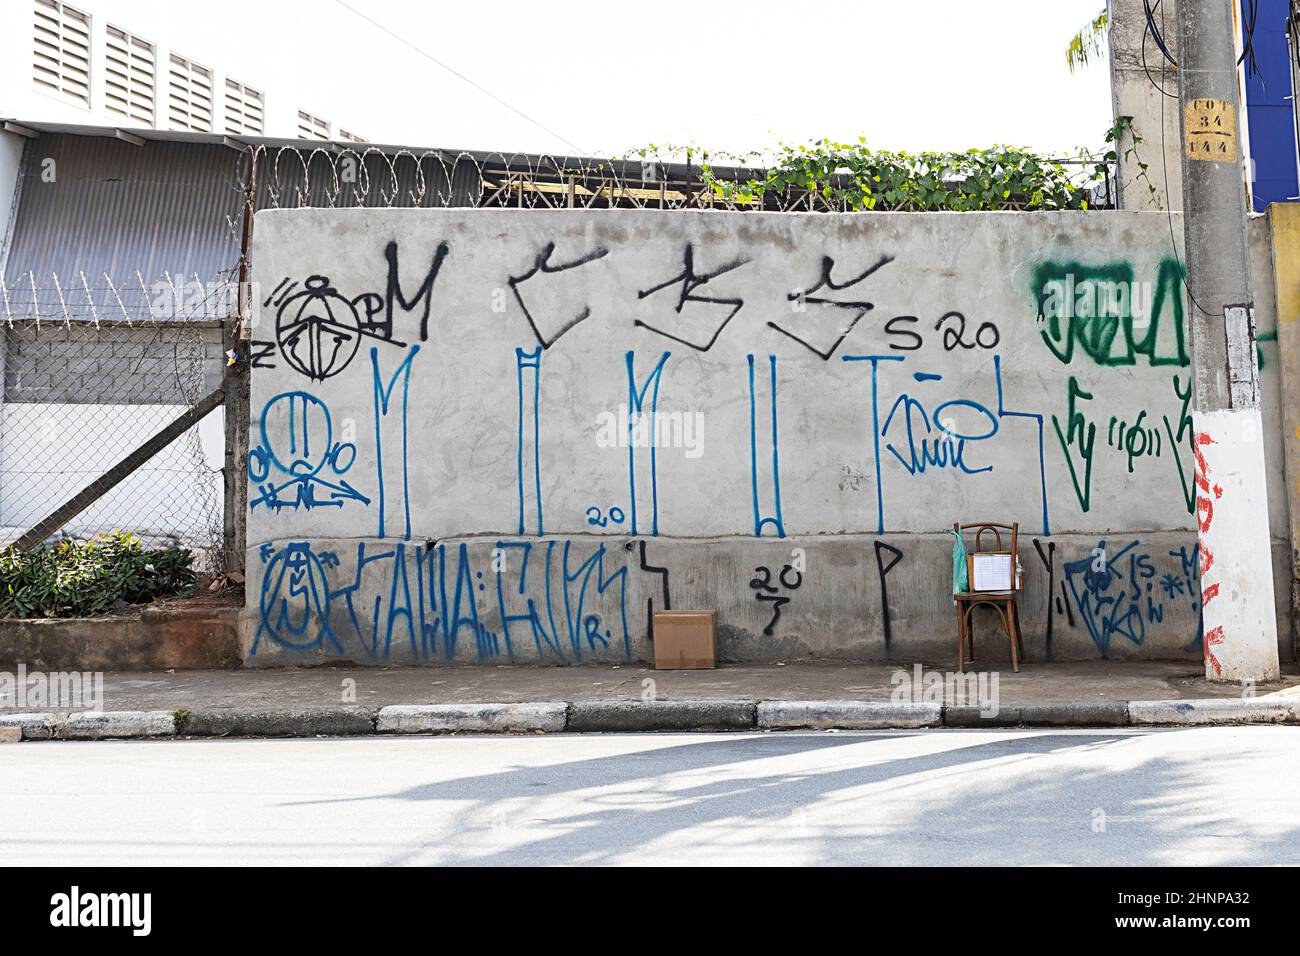 vandalismo mural graffiti ciudad sao paulo brasil Foto de stock